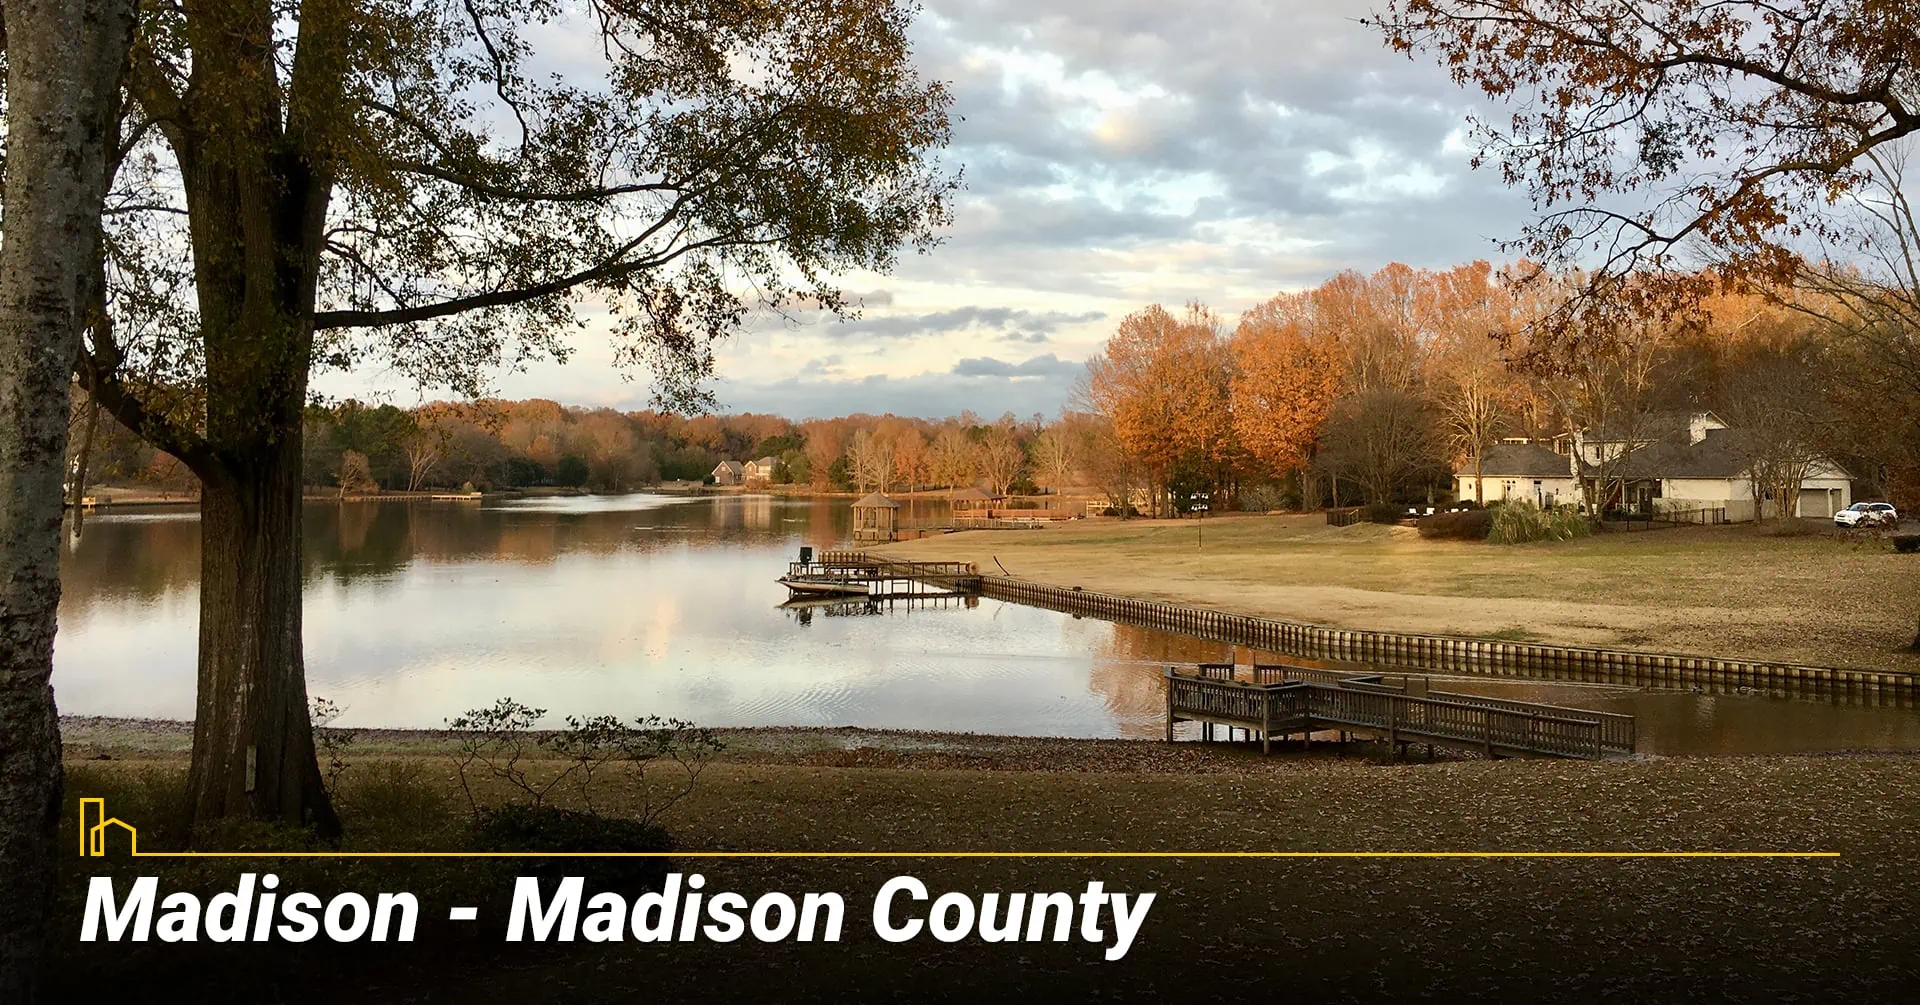 Madison - Madison County